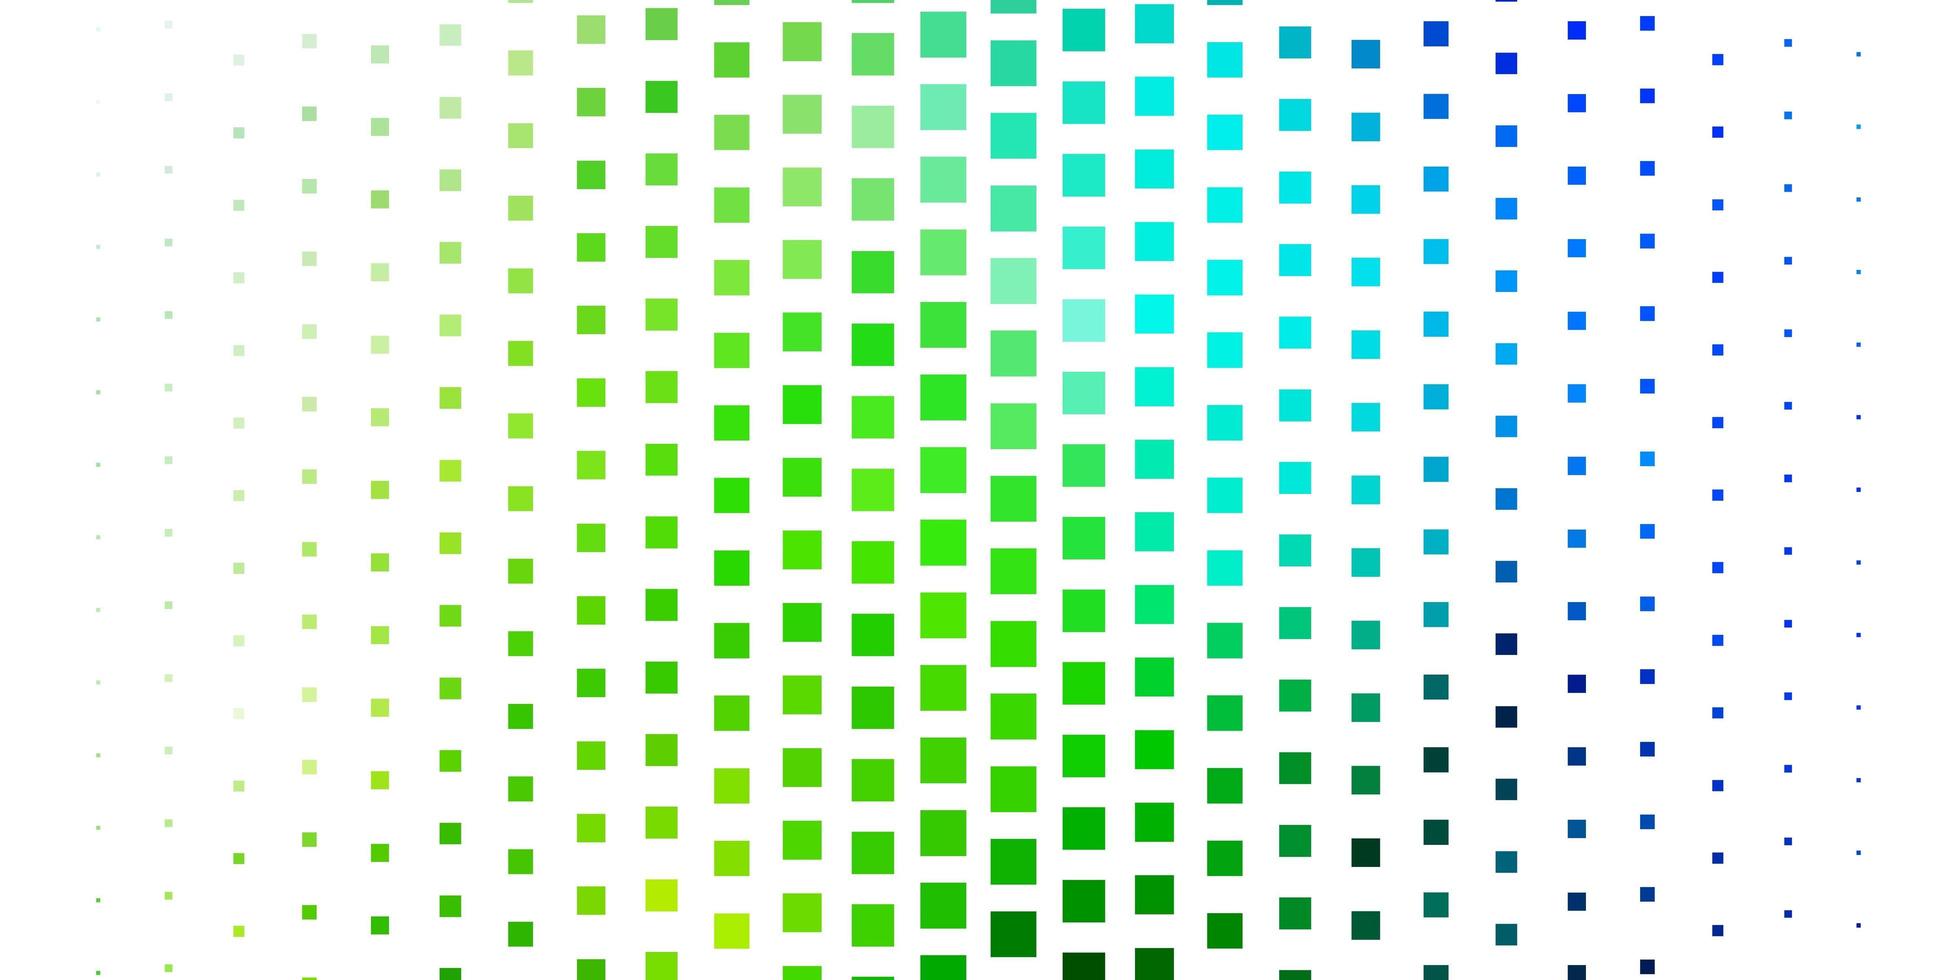 modelo de vetor azul e verde claro em retângulos.